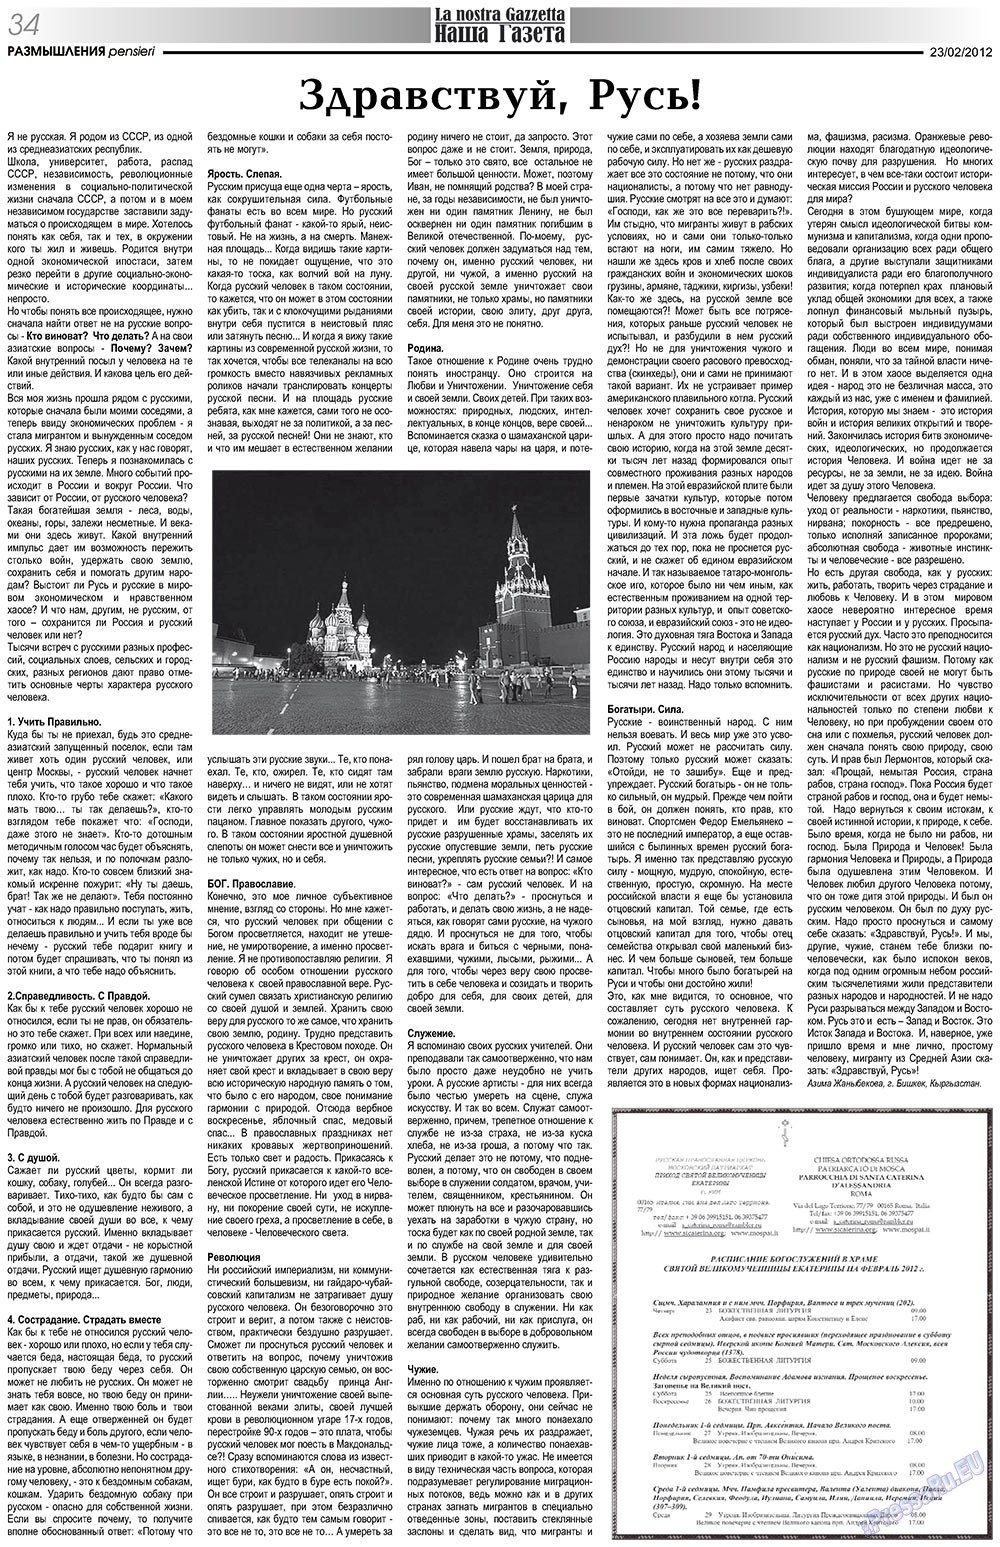 Наша Газета Италия, газета. 2012 №151 стр.34